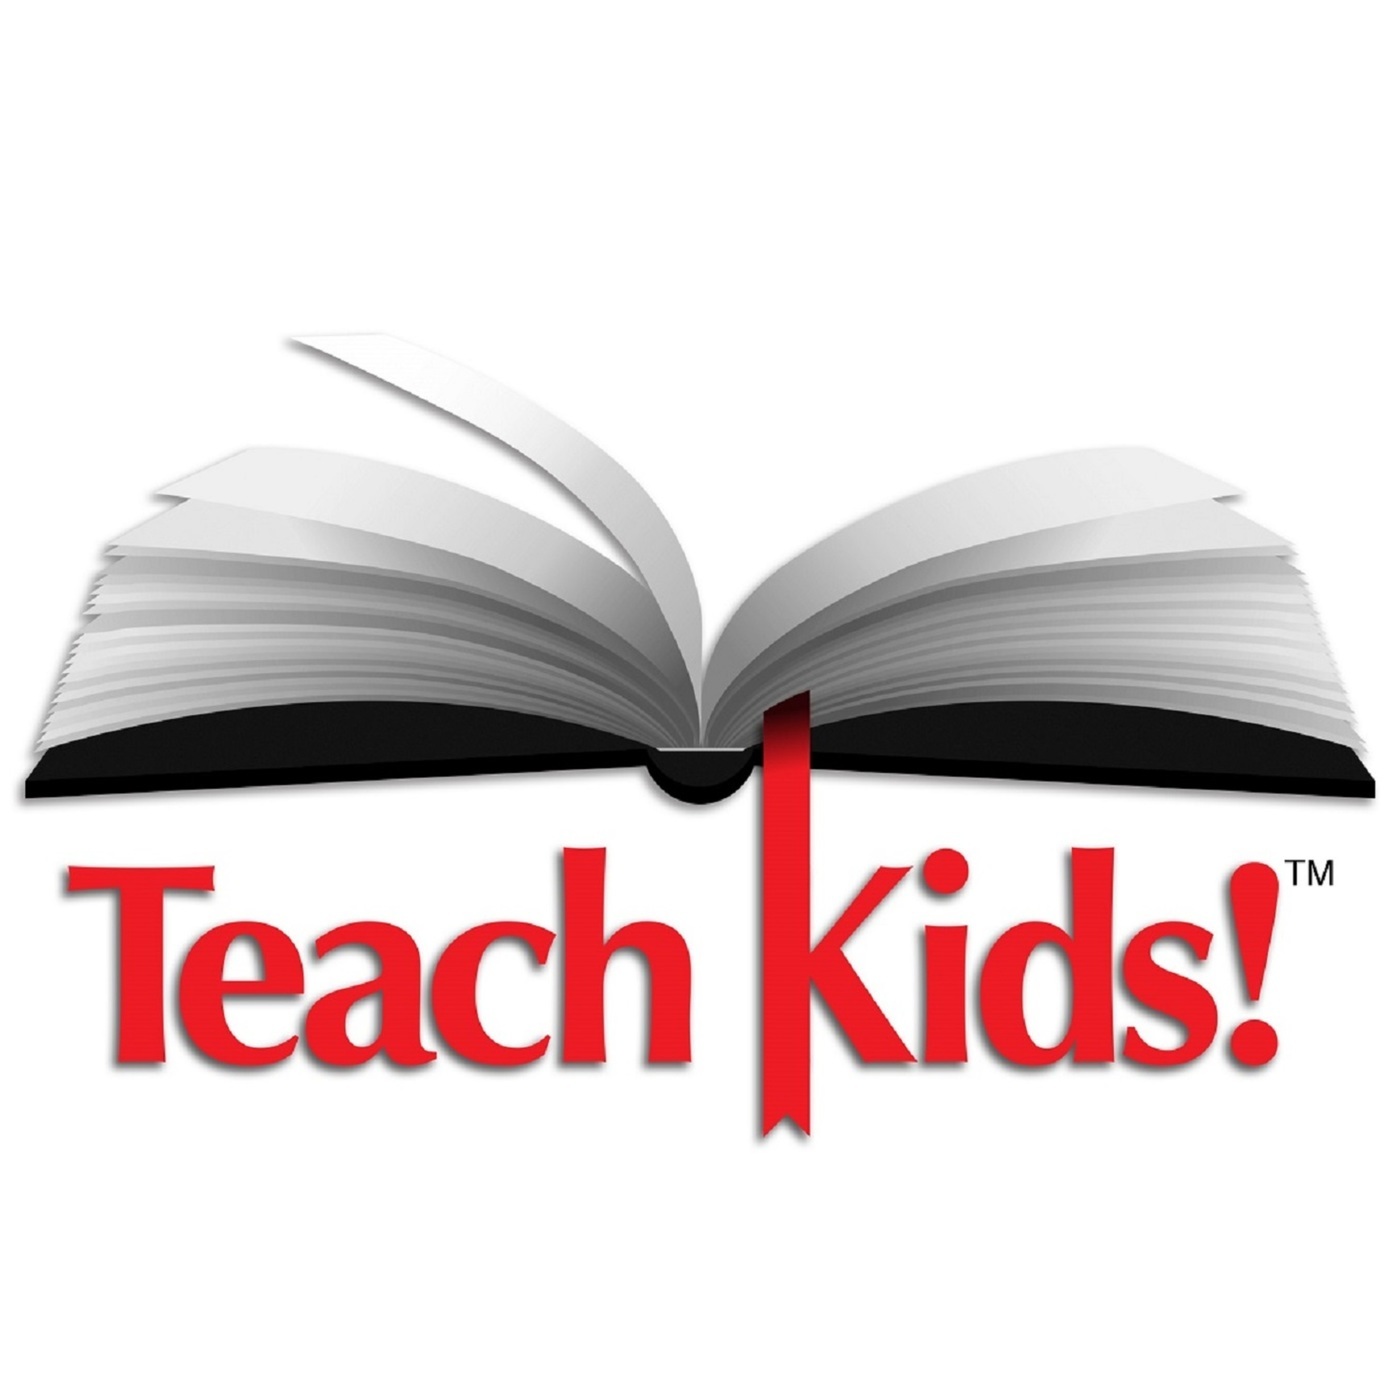 Teach Kids: Teach Kids to Value All People